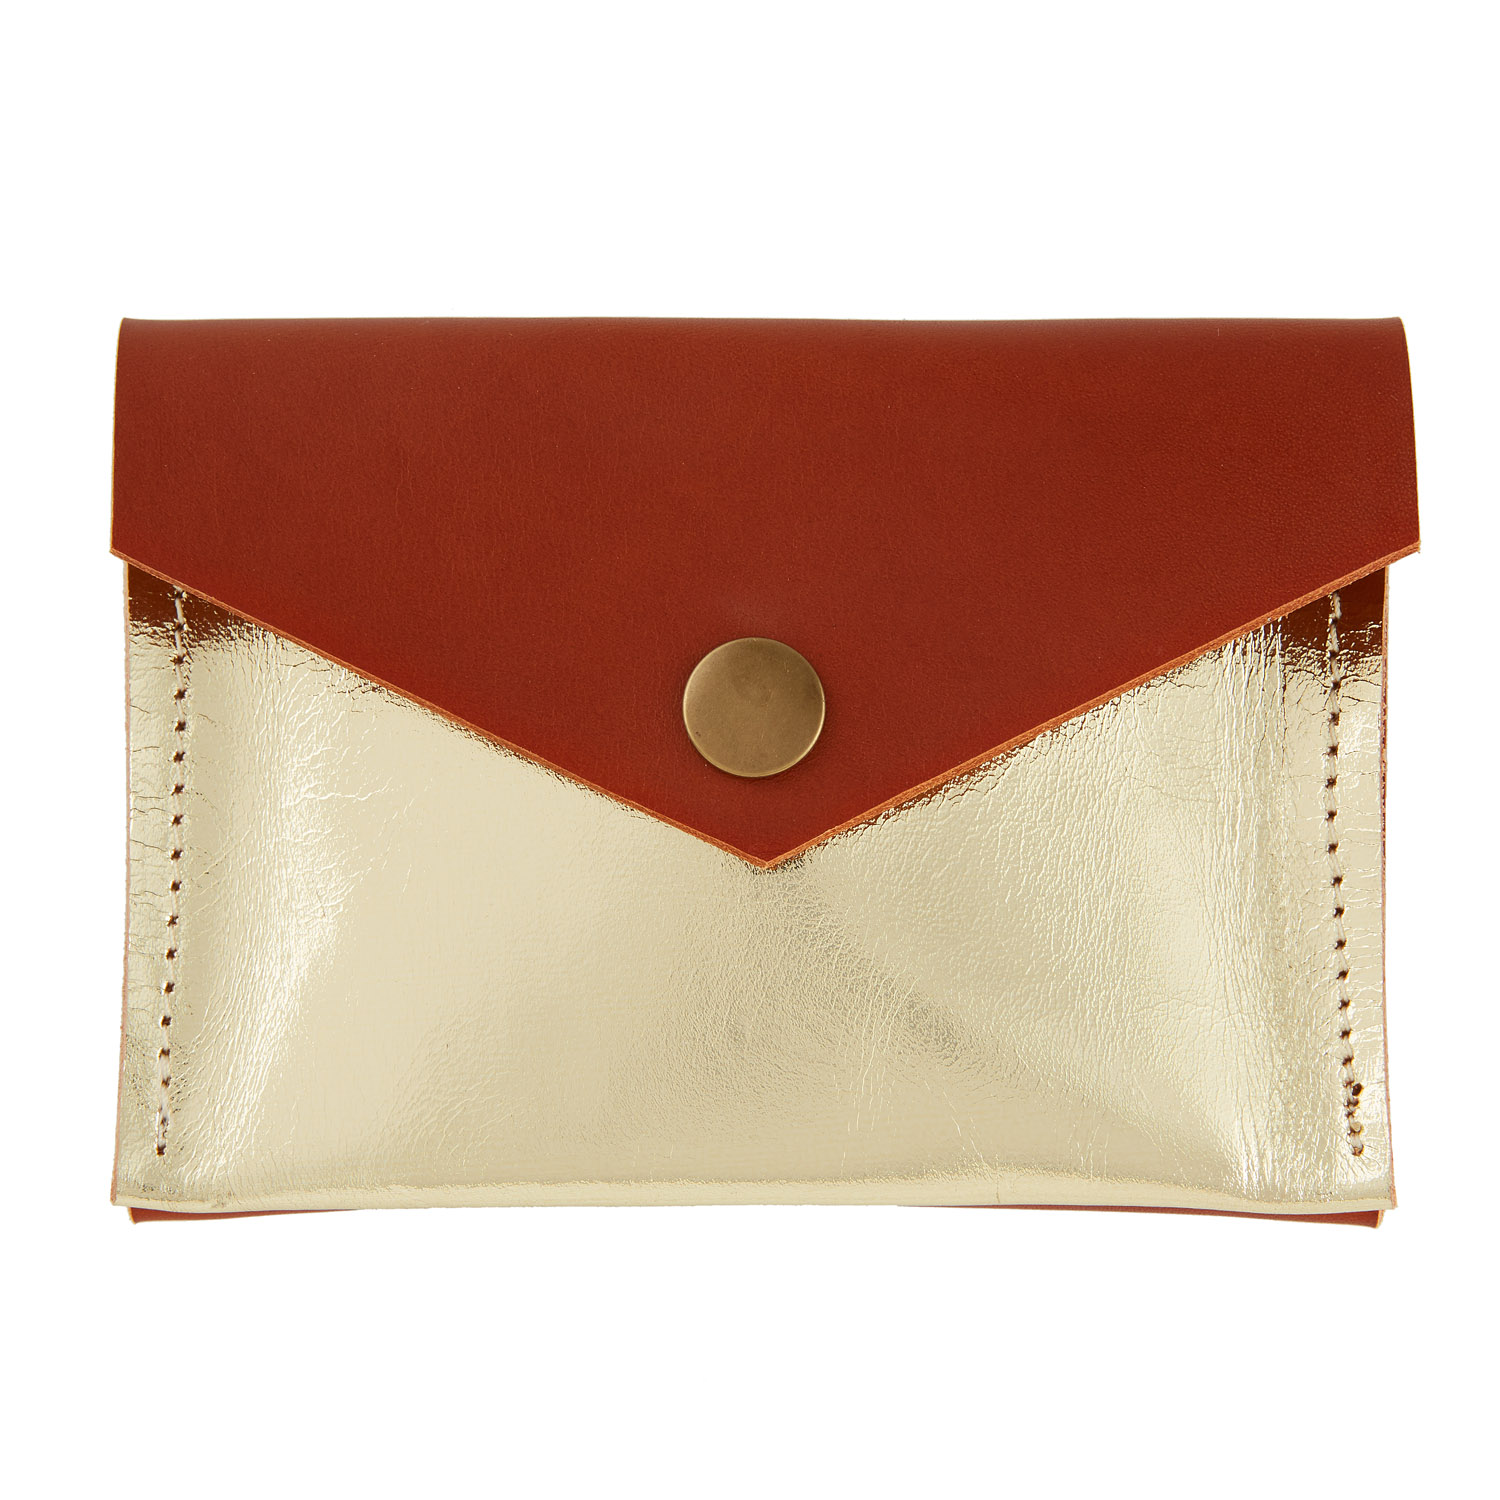 Vintage Handbag Structured Purse. UK D973682. UK pat 1519246 | eBay